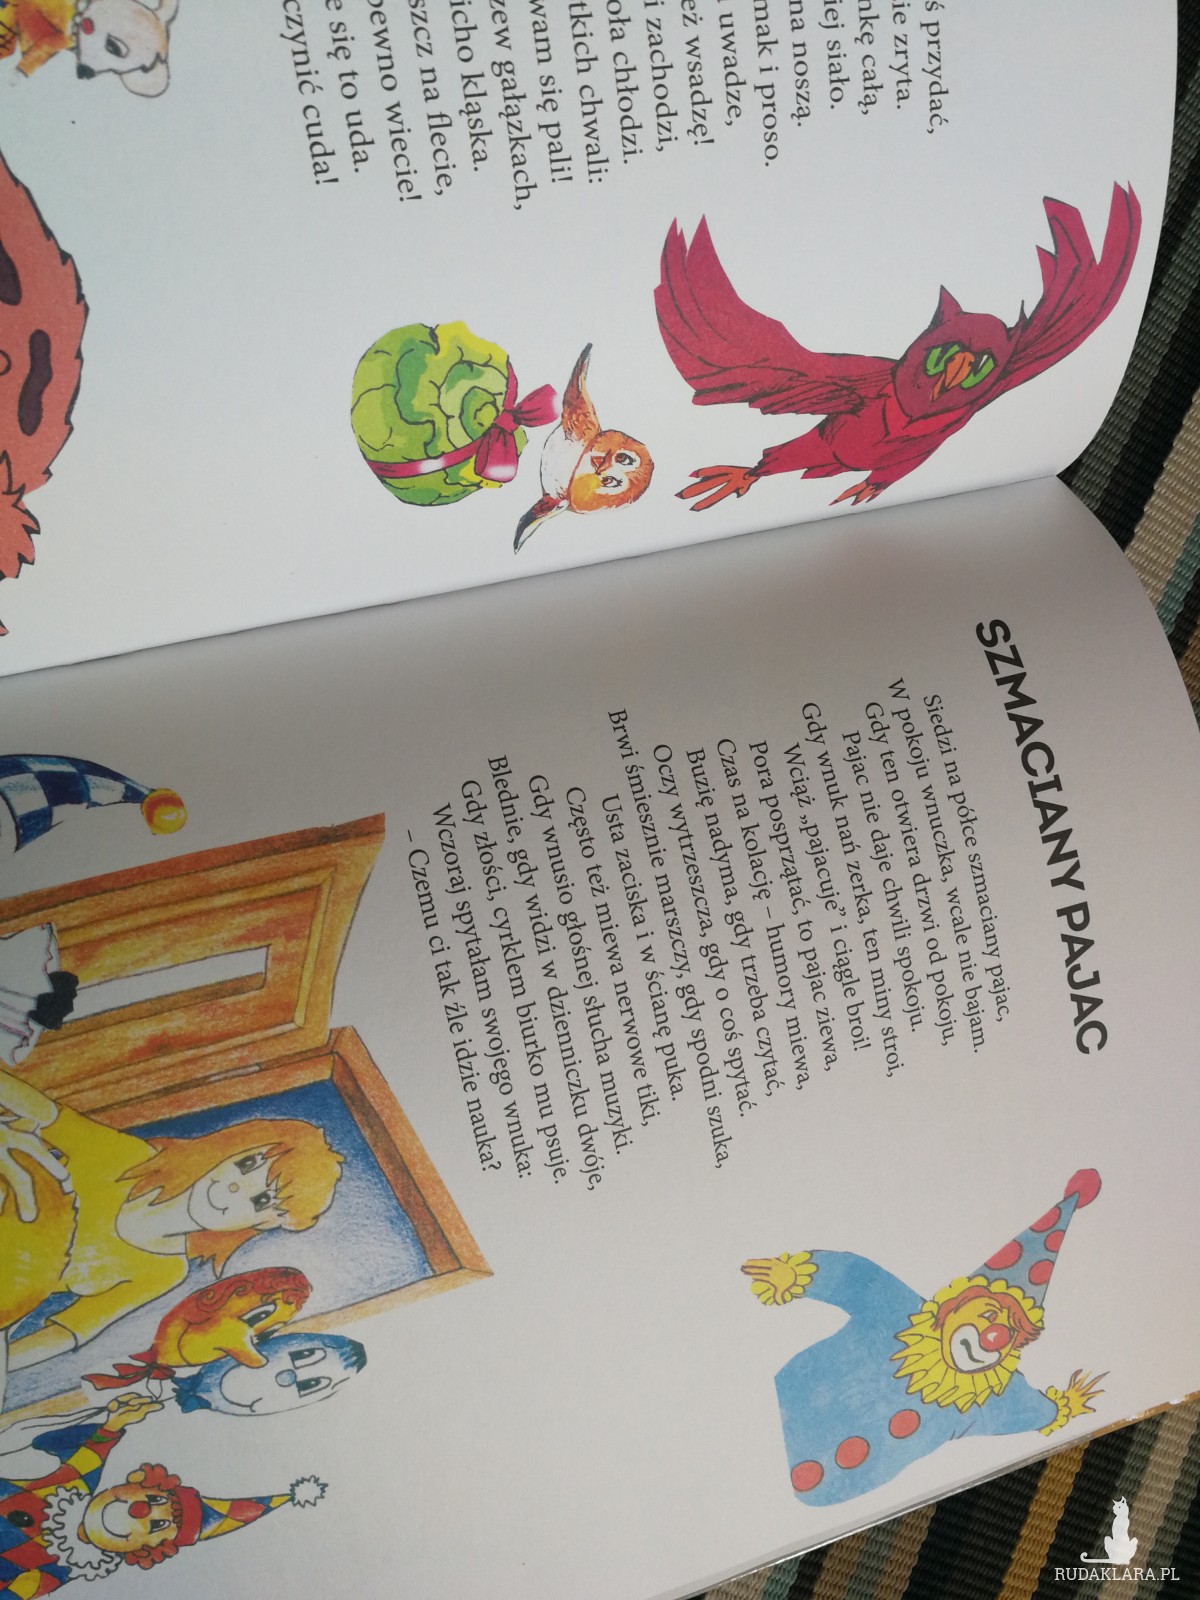 Barbajki kubusiowe wierszyki to książeczka dla dzieci z niezwykle dowcipnymi wierszykami